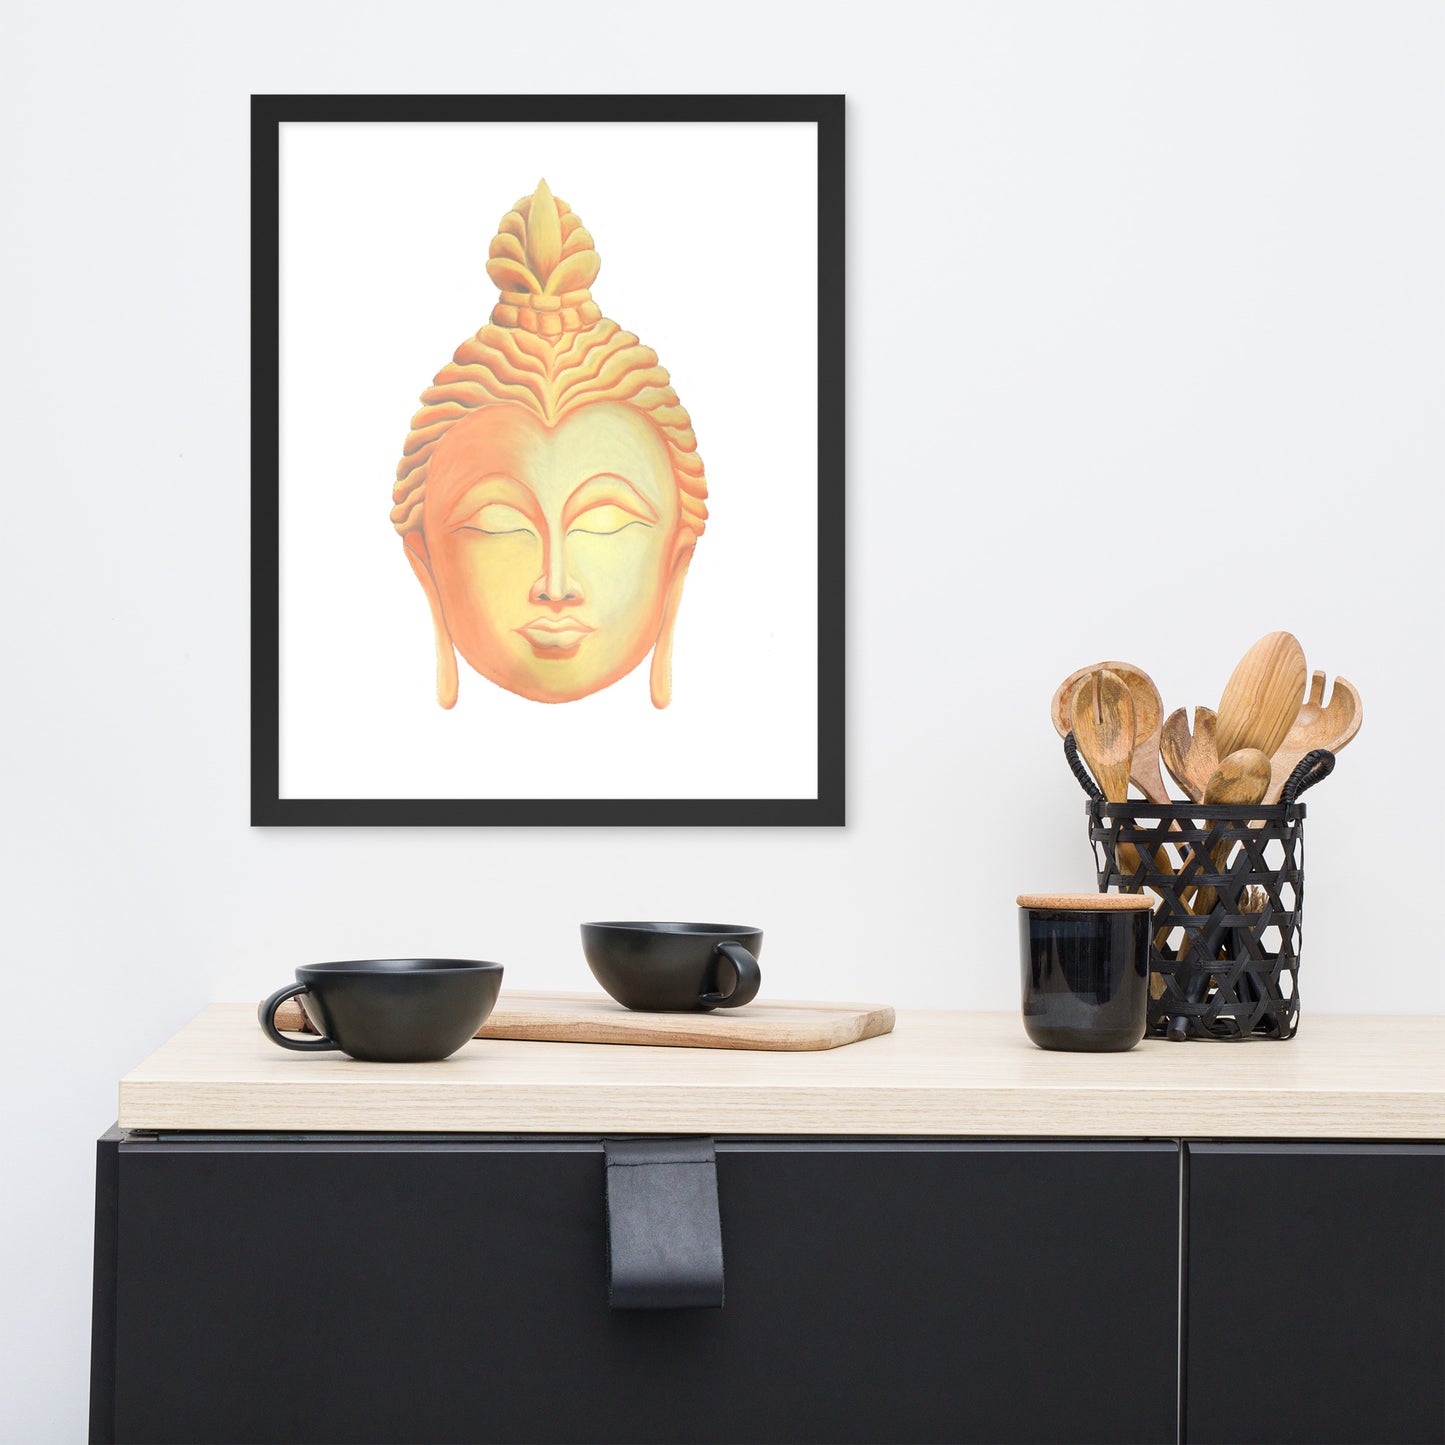 Golden Buddha Good Luck Framed poster